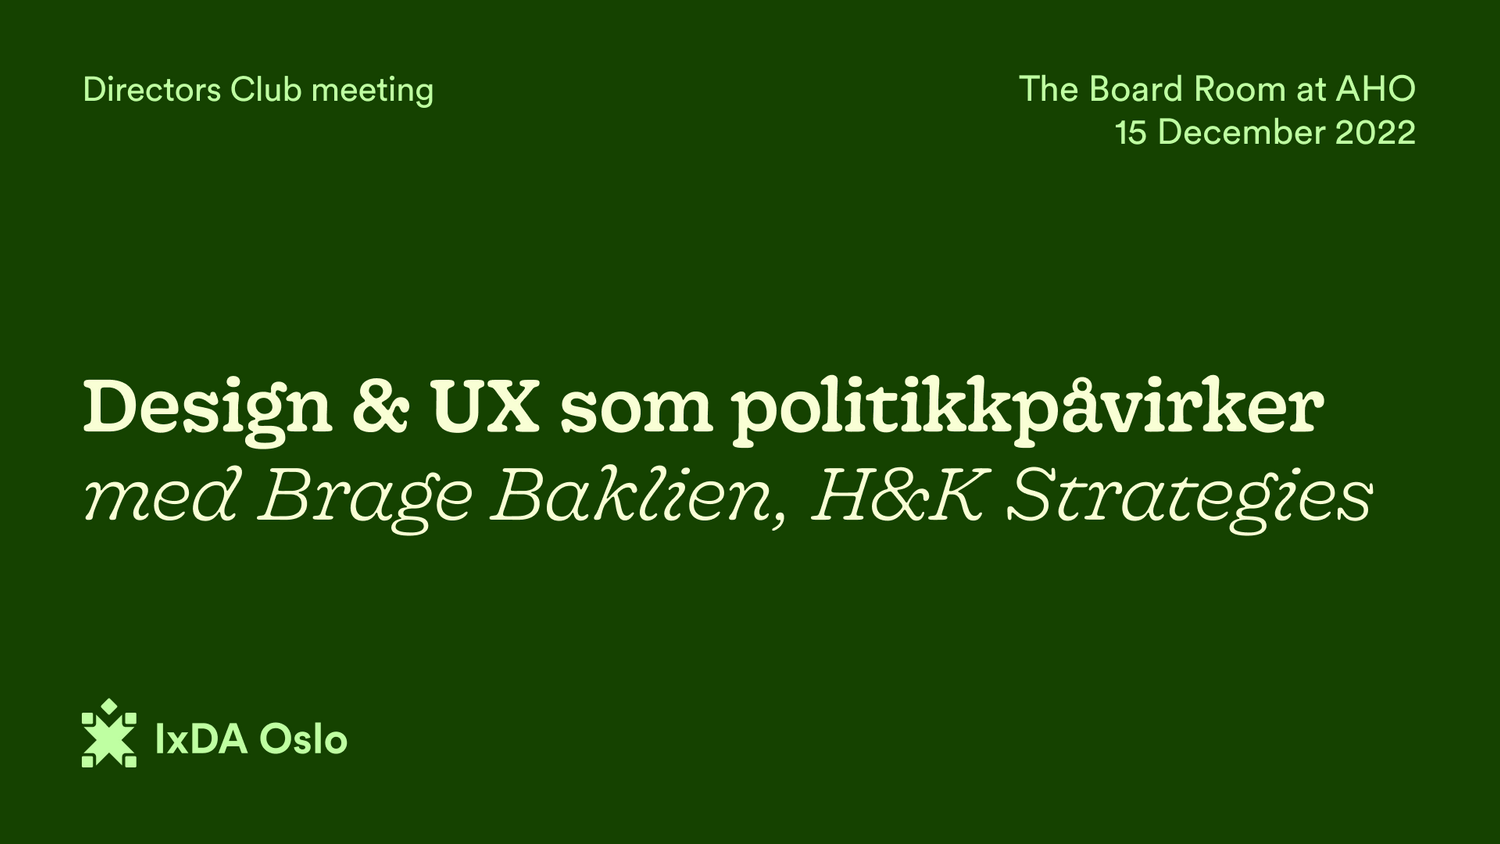 Plakat for arrangementet. Teksten er: Design & UX som politikkpåvirker, med Brage Baklien, H&K strategies